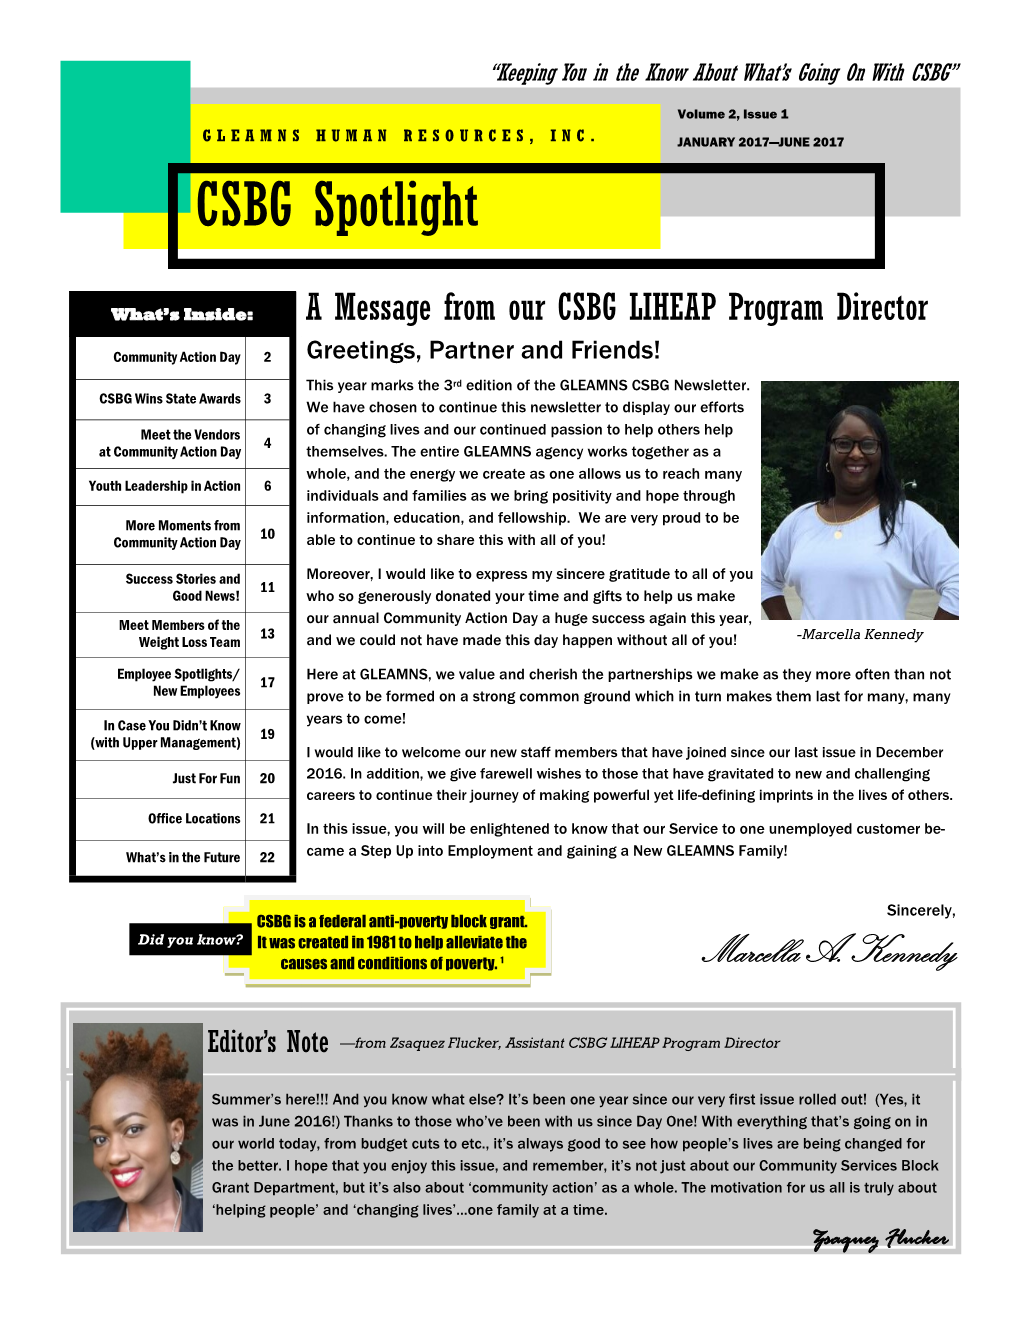 CSBG Spotlight